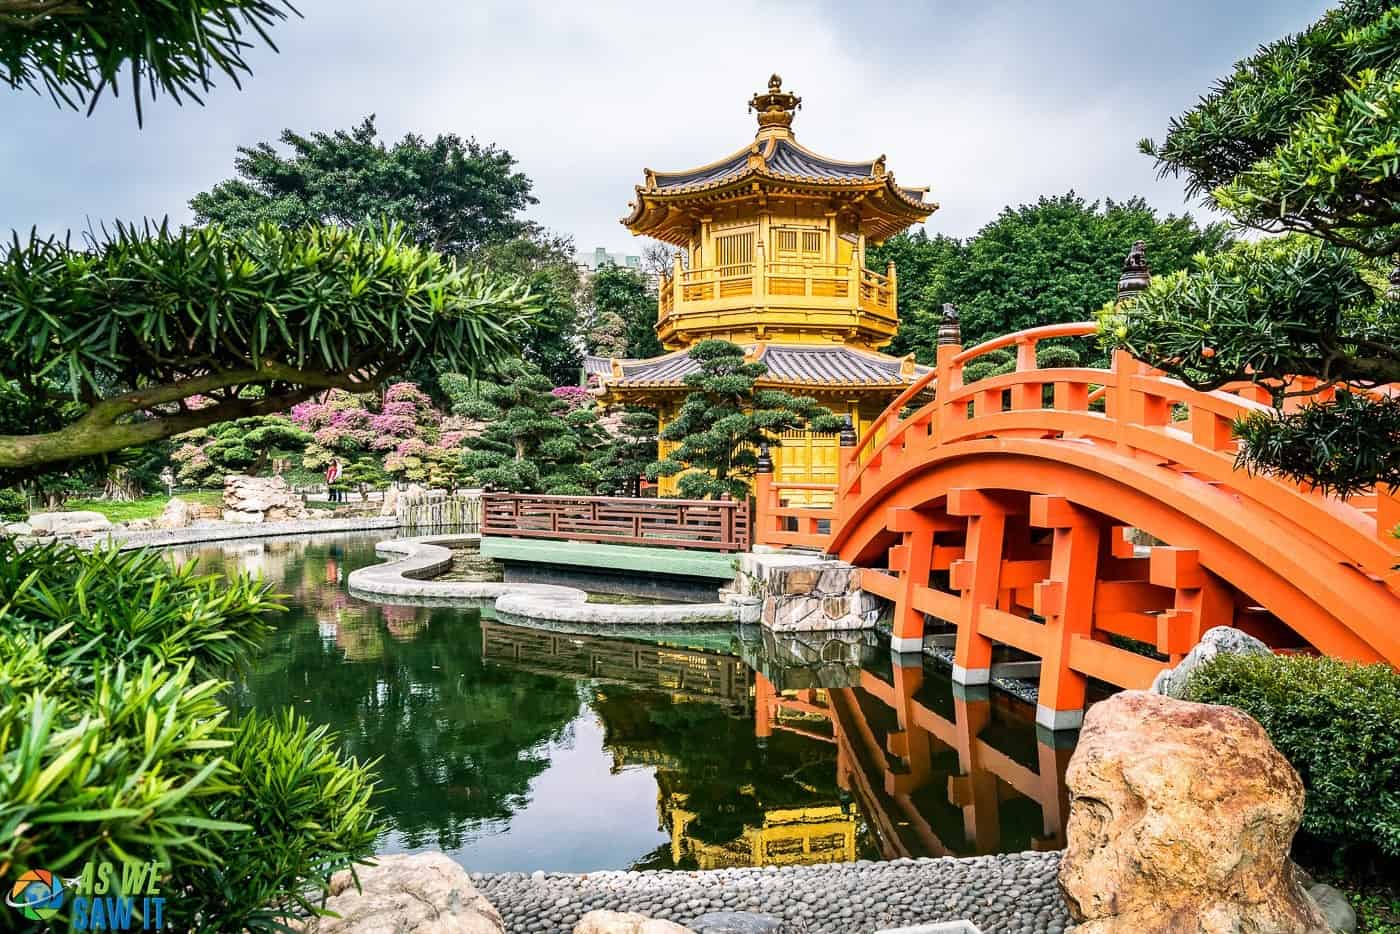 Golden Pagoda in Nan Lian Garden, Hong Kong, China